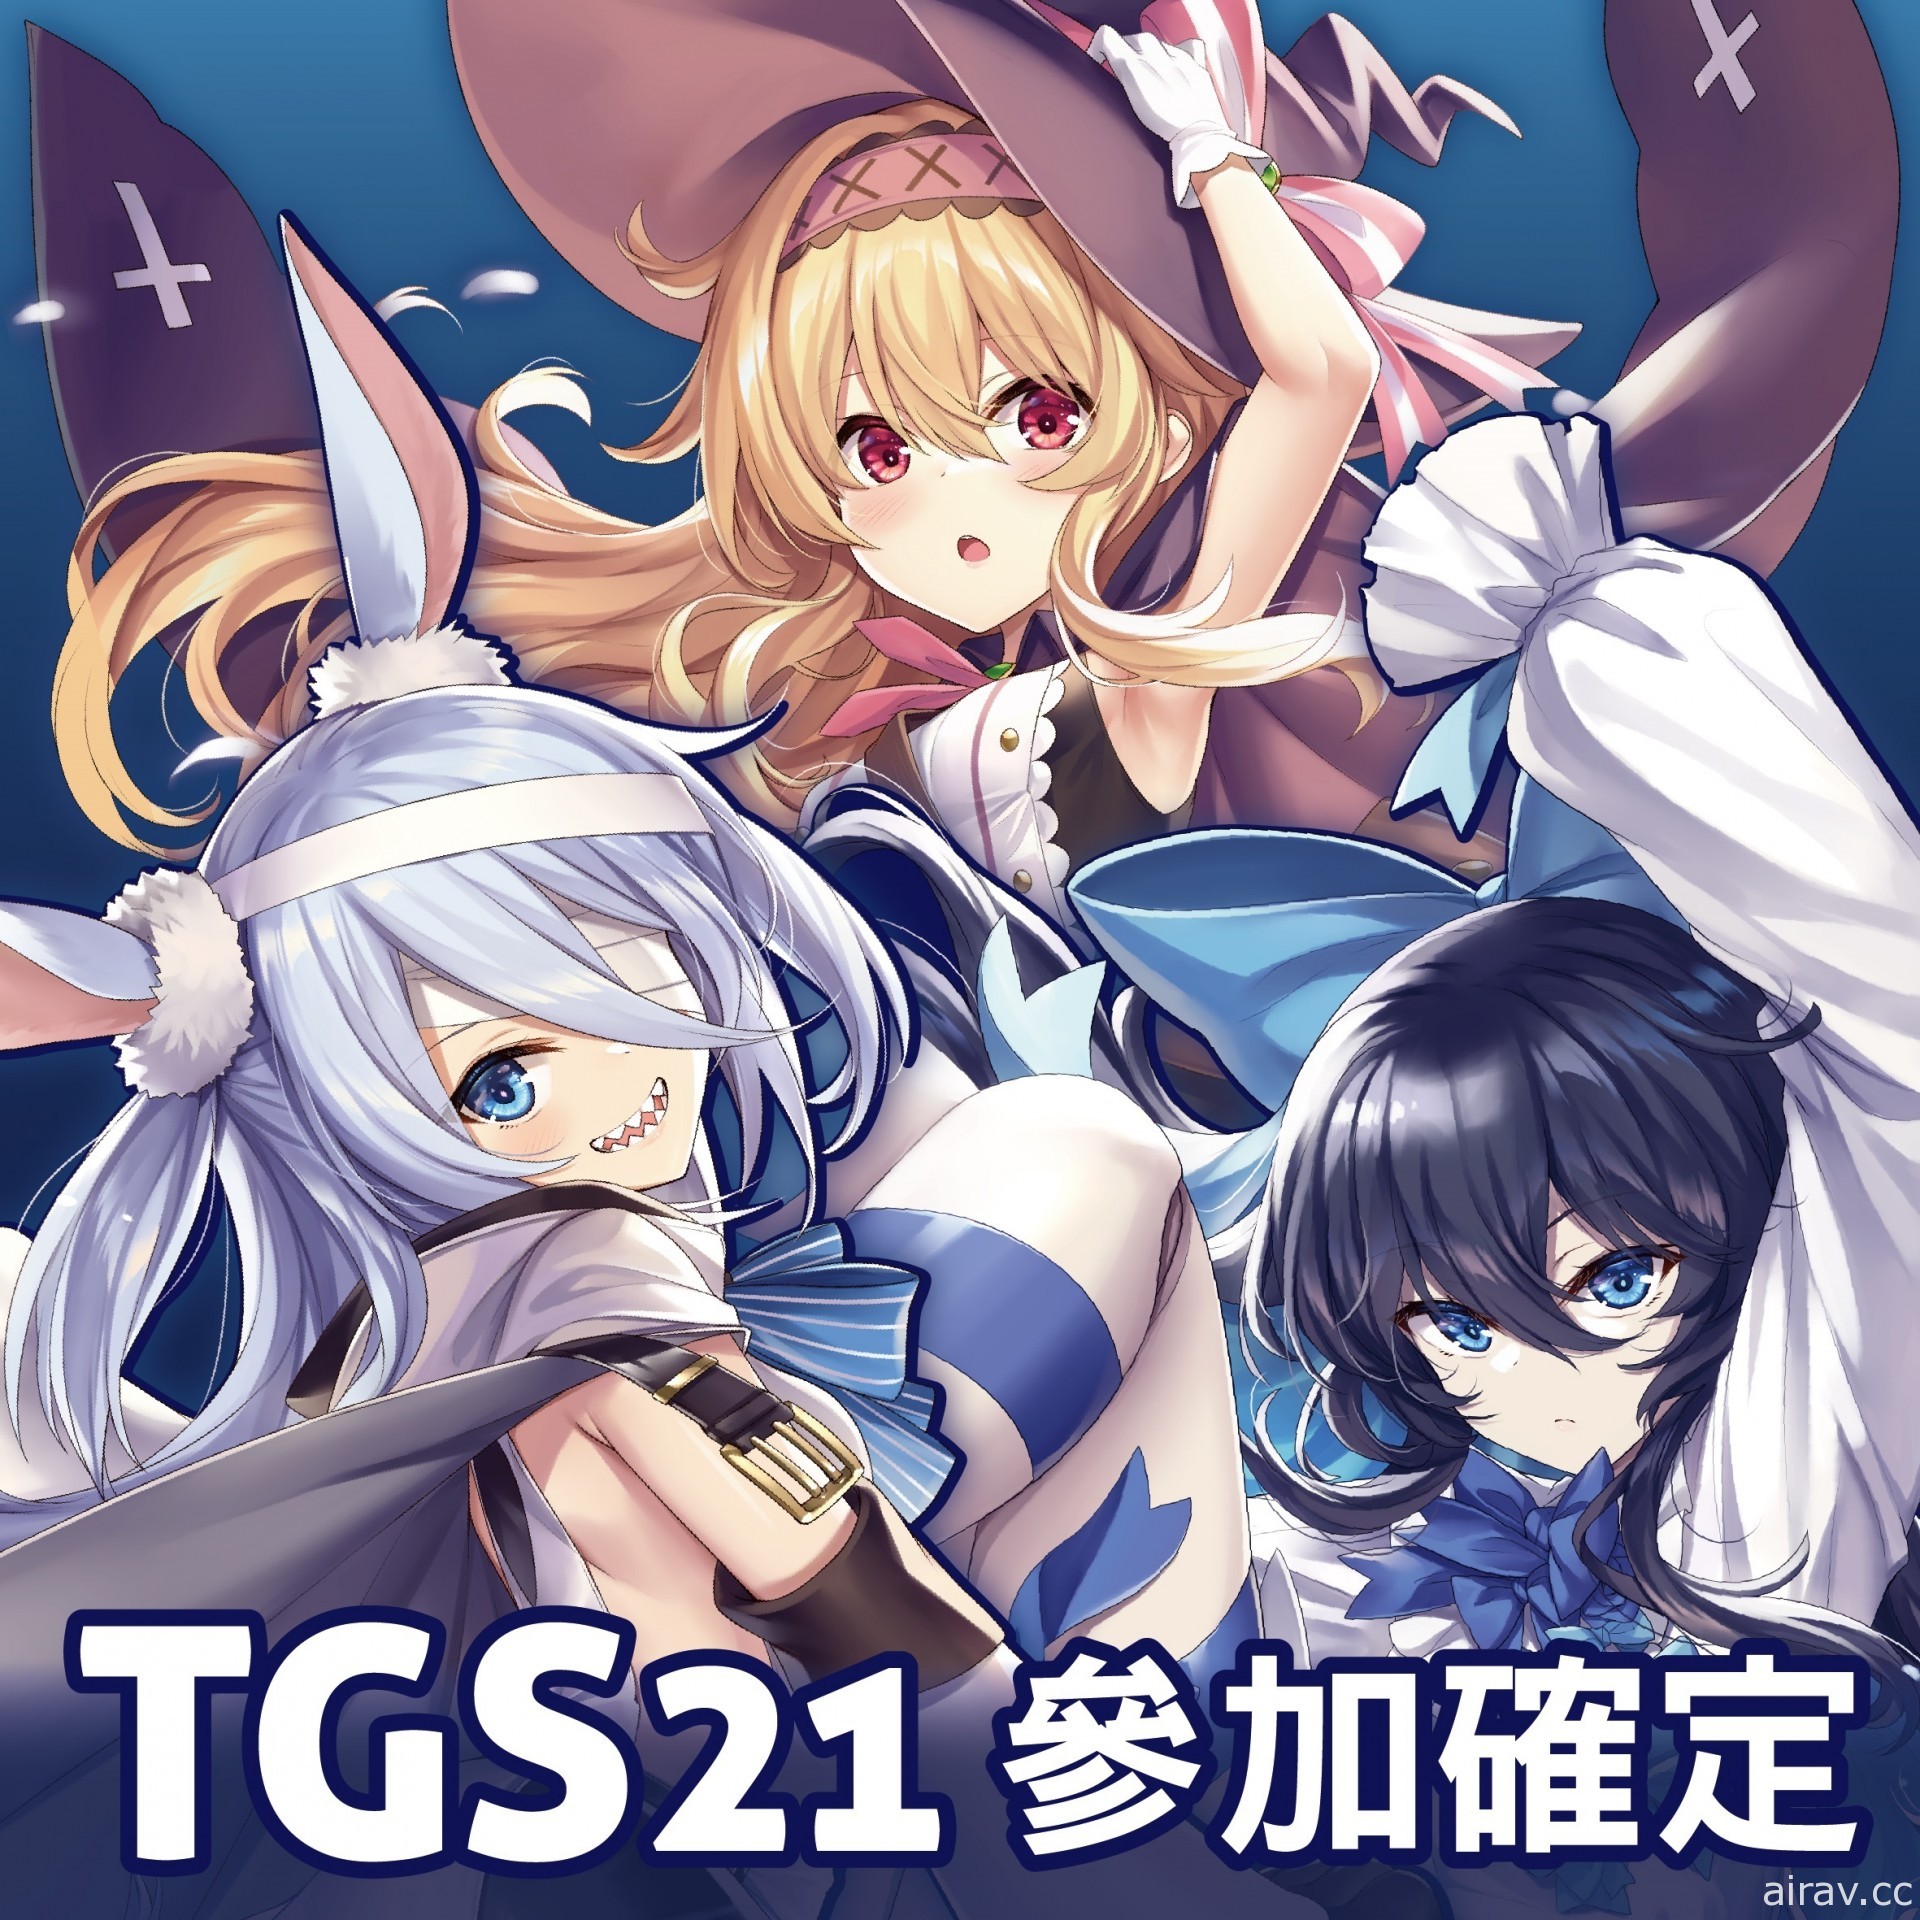 【TGS 21】《小魔女諾貝塔》預告將在東京電玩展揭開新遊戲內容